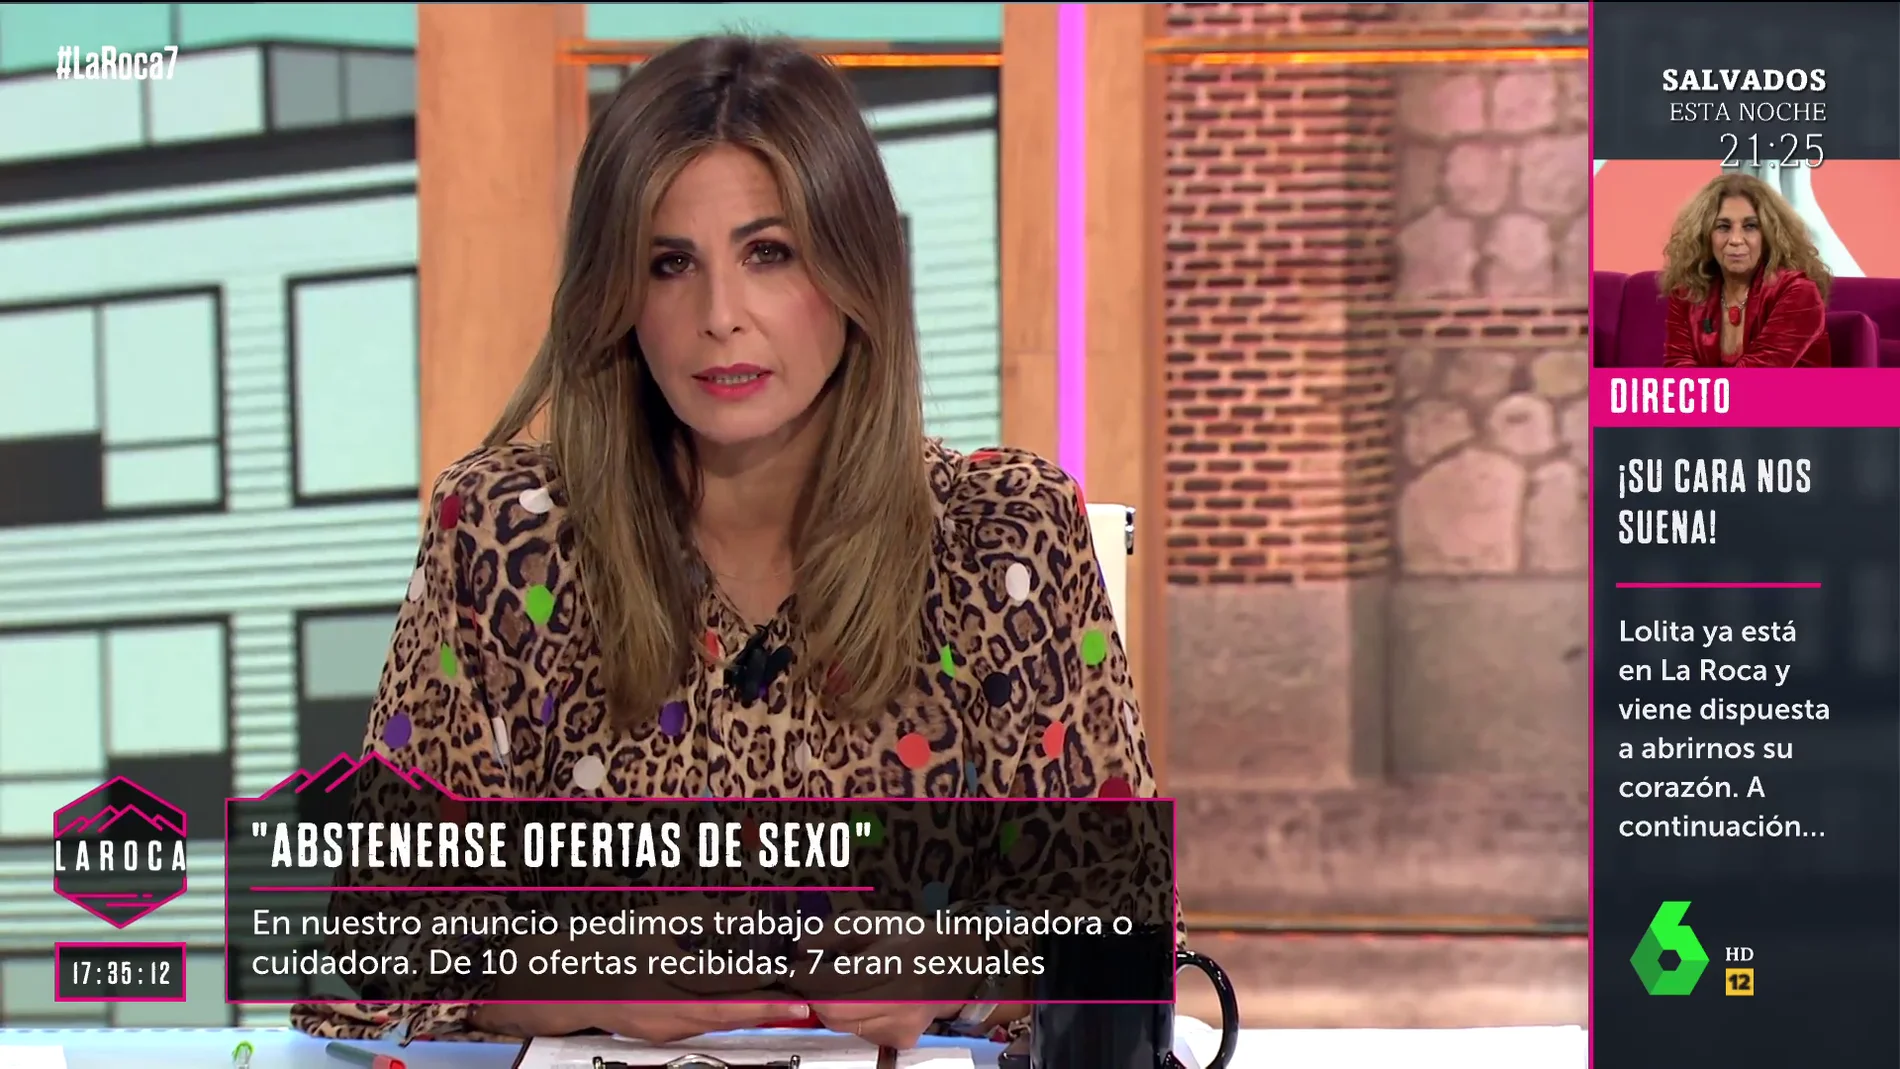  Nuria Roca responde tajante a los acosadores sexuales: "No tienen dignidad, producen mucho asco"